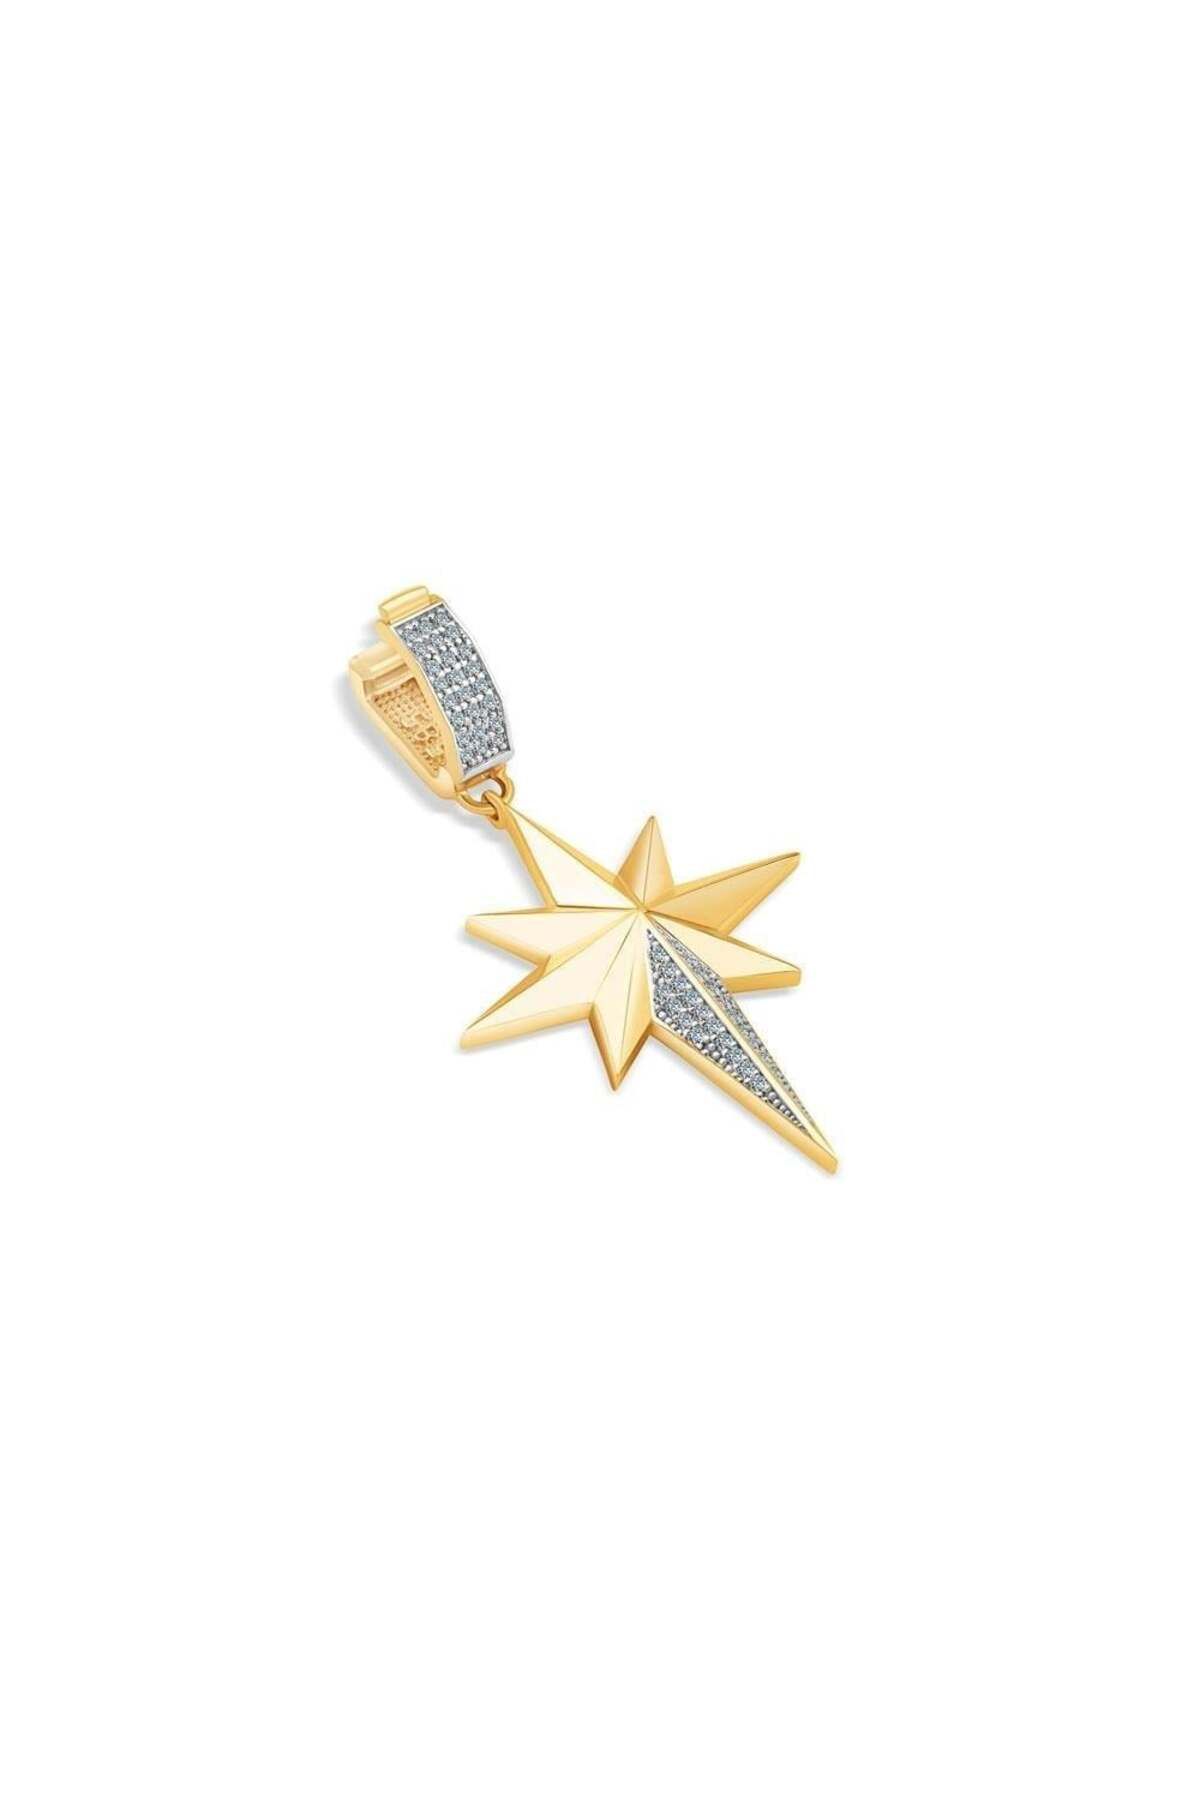 Ema Jewellery Altın Kuzey Yıldızı Charm